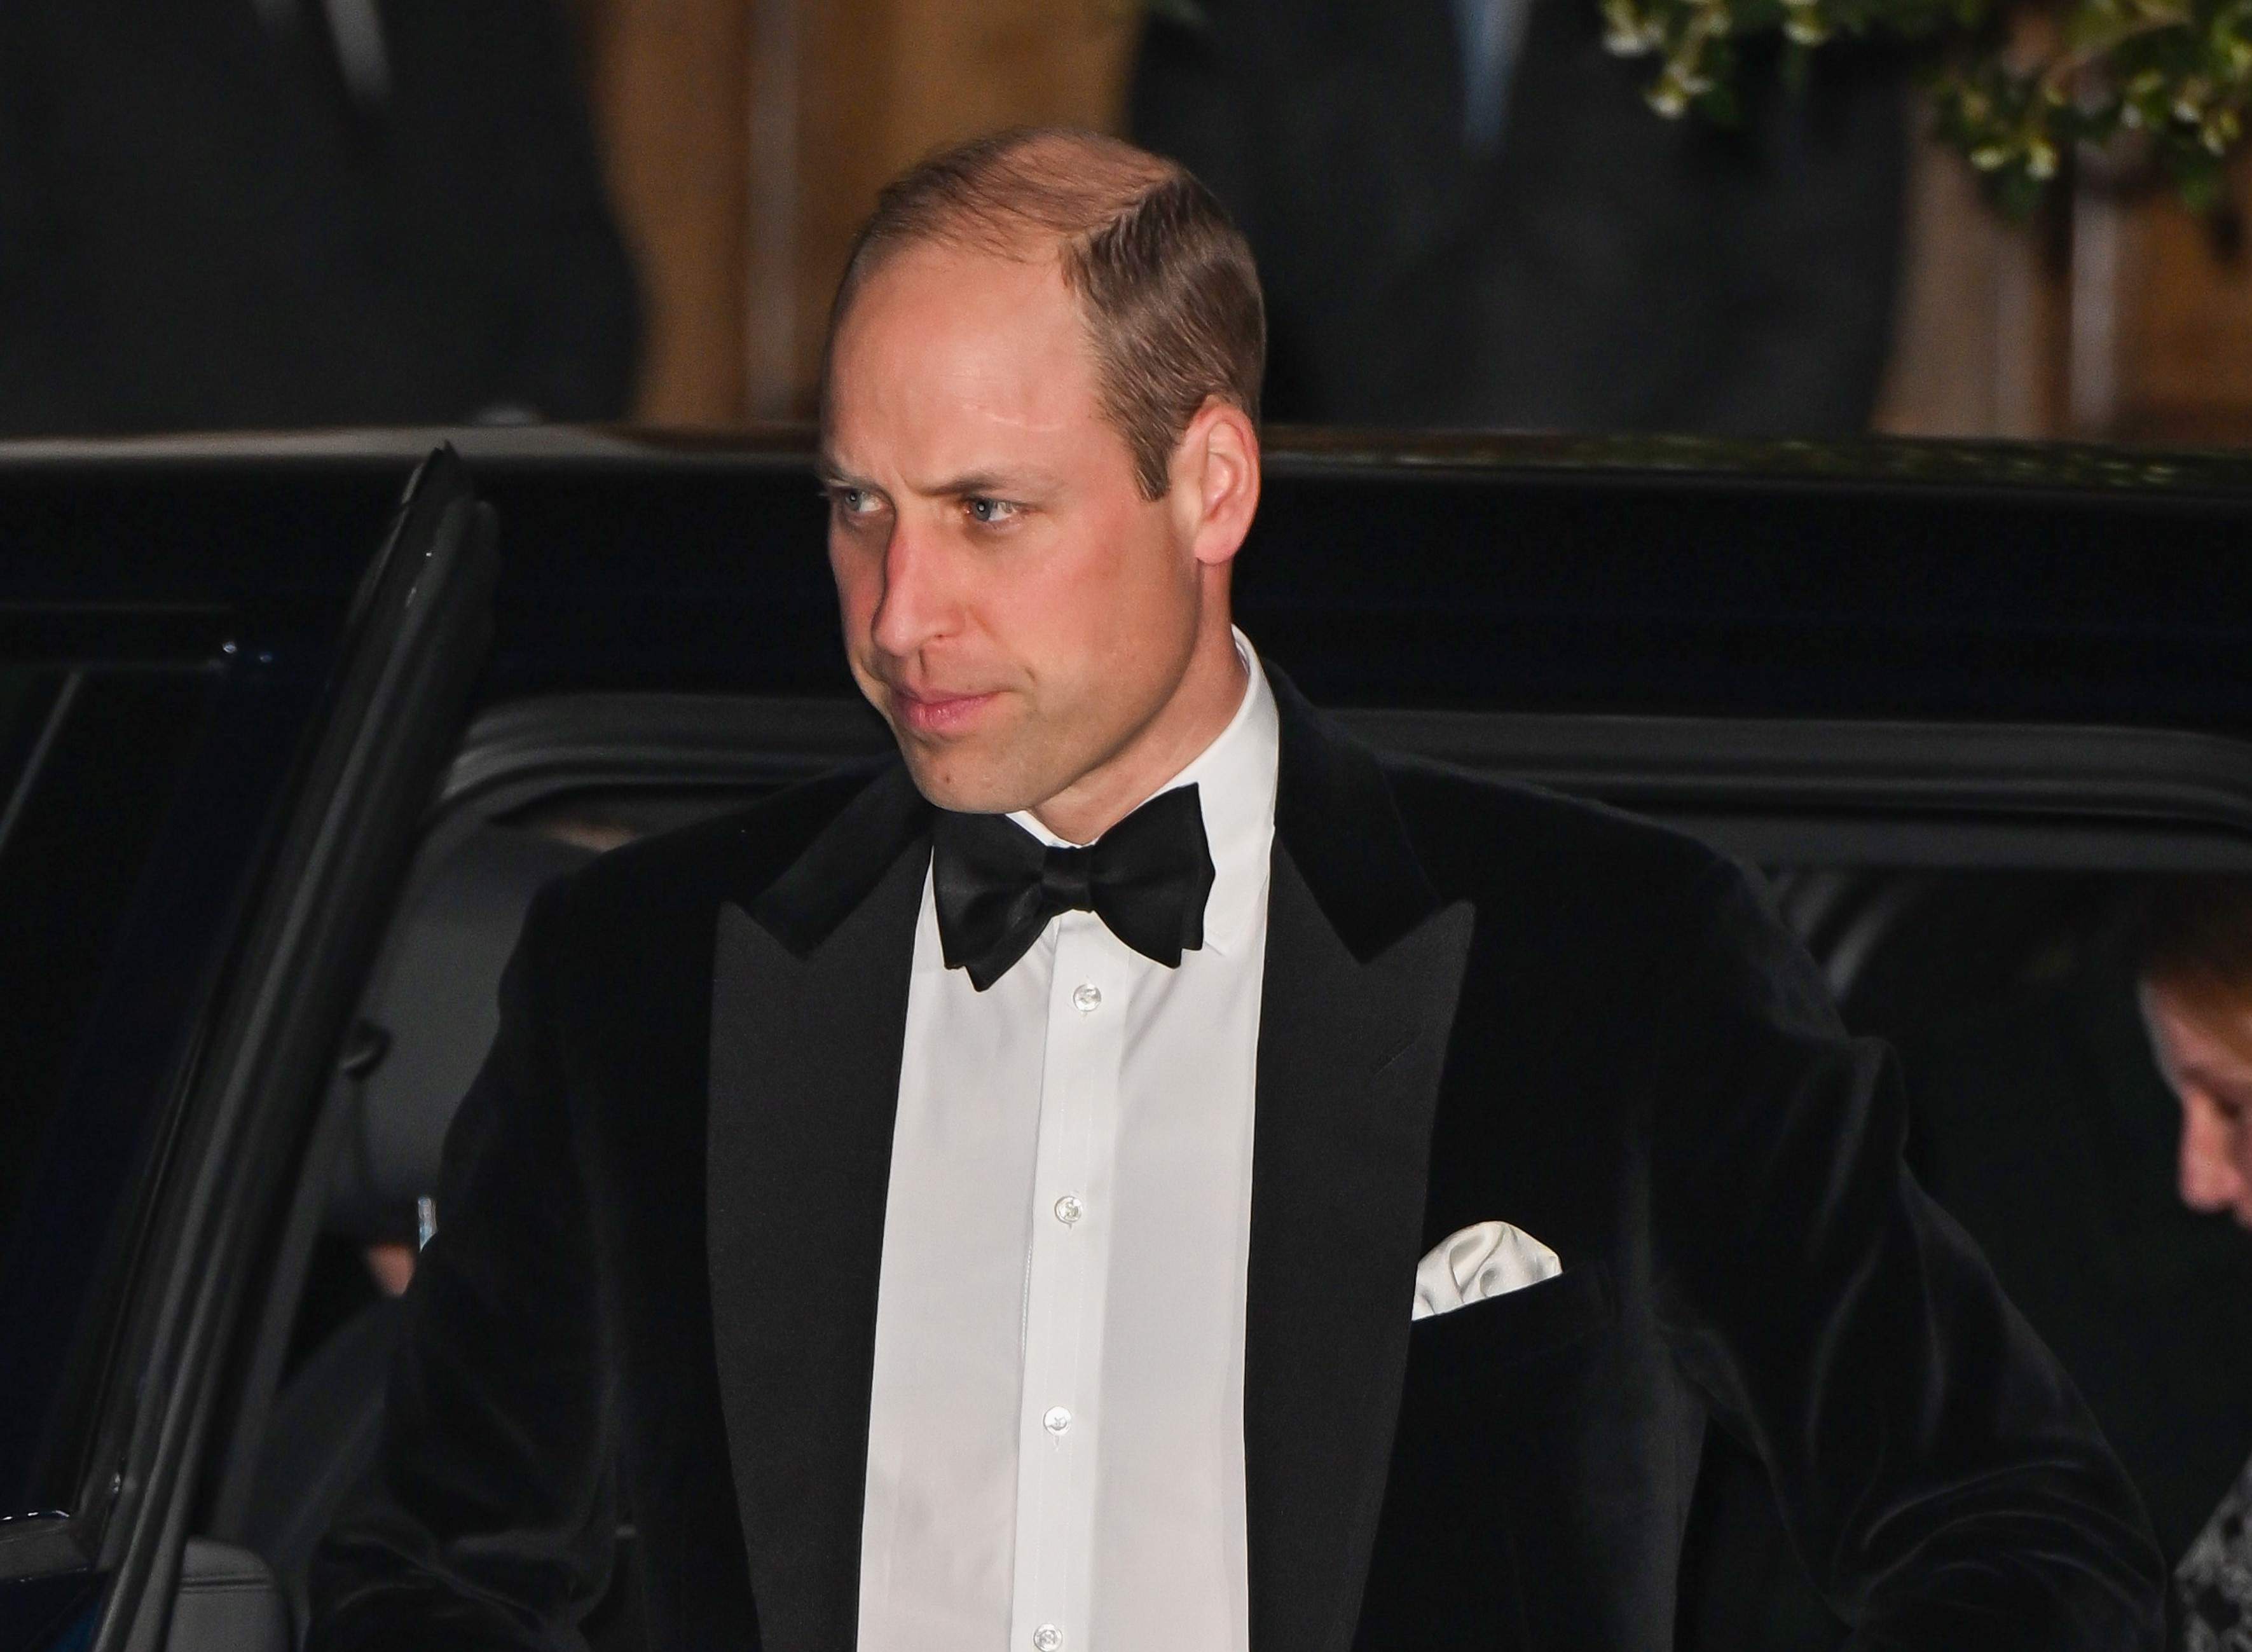 Alarma en Buckingham, el príncipe Guillermo a punto del colapso, vídeo inquietante